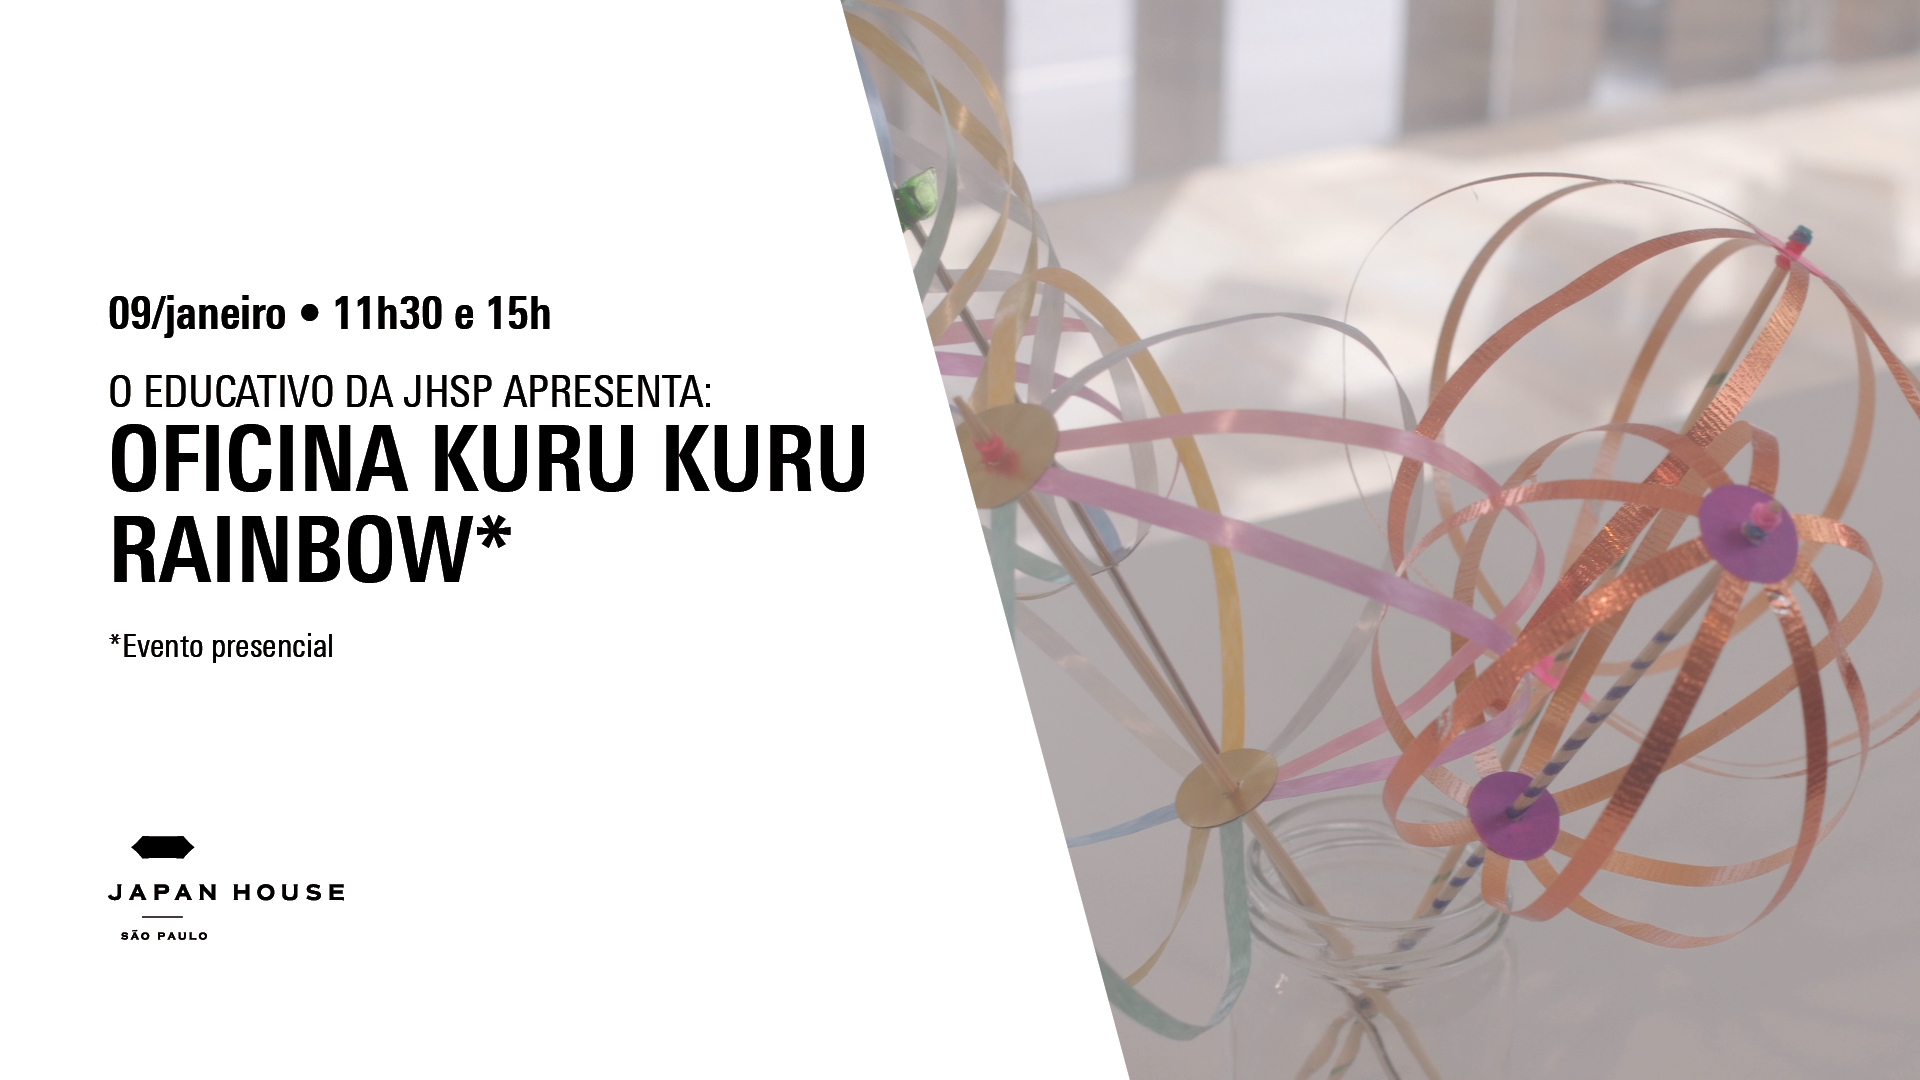 Banner informativo. O EDUCATIVO DA JHSP APRESENTA: Oficina Kuru Kuru Rainbow. Dia 09 de janeiro, às 11h30 e 15h. Evento presencial. 